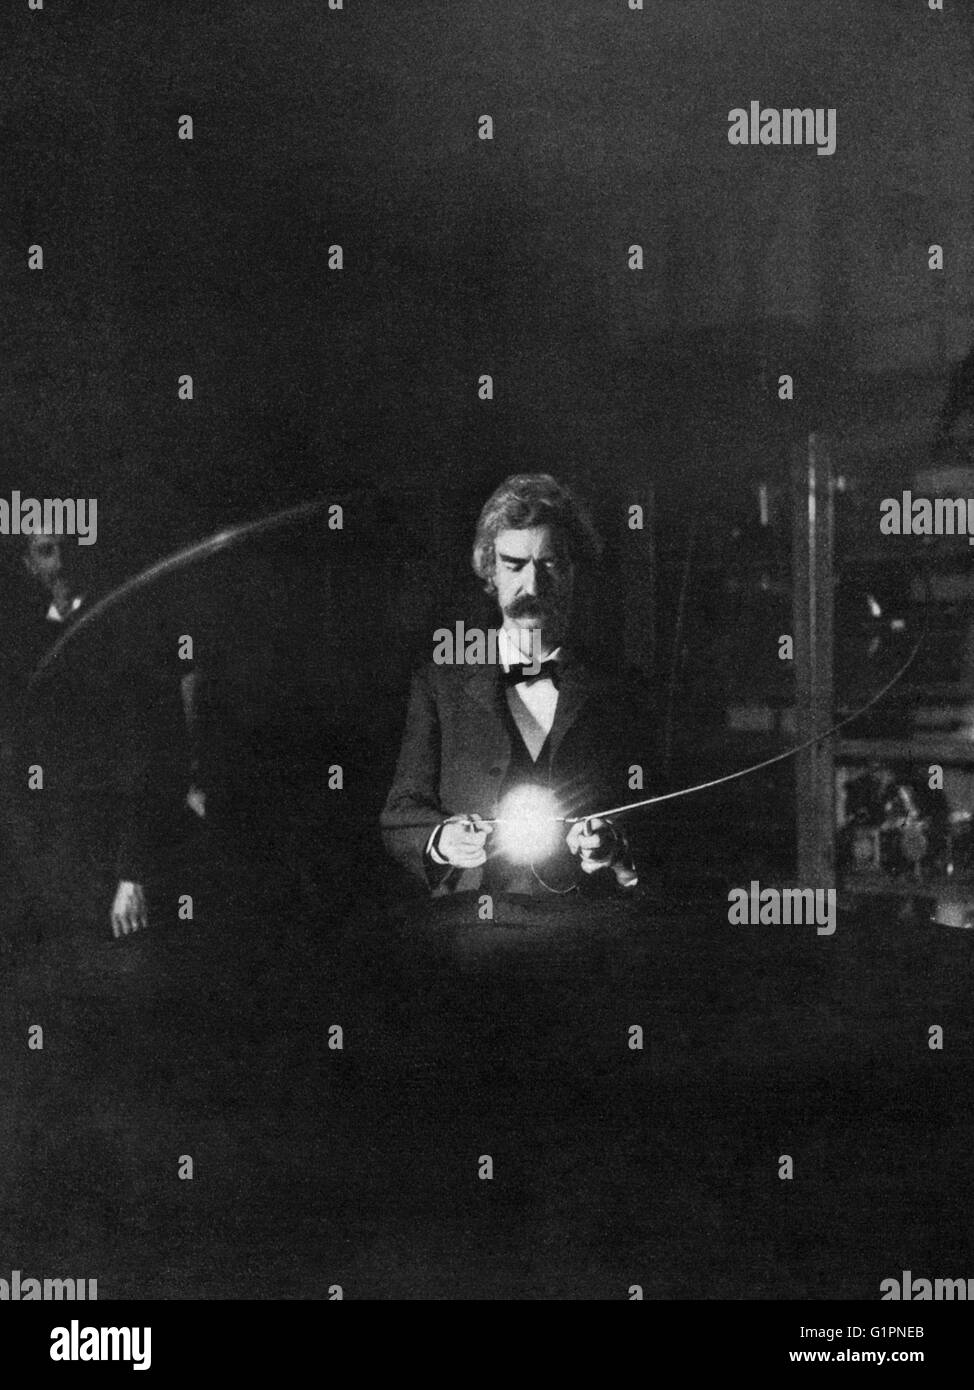 MARK TWAIN (1835-1910). Samuel Clemens. El escritor americano y humorista. Fotografiado en el laboratorio de Nikola Tesla; experimento ilustrando la iluminación de la lámpara incandescente por pasar la corriente a través del cuerpo. Fotografía, enero de 1894. Foto de stock